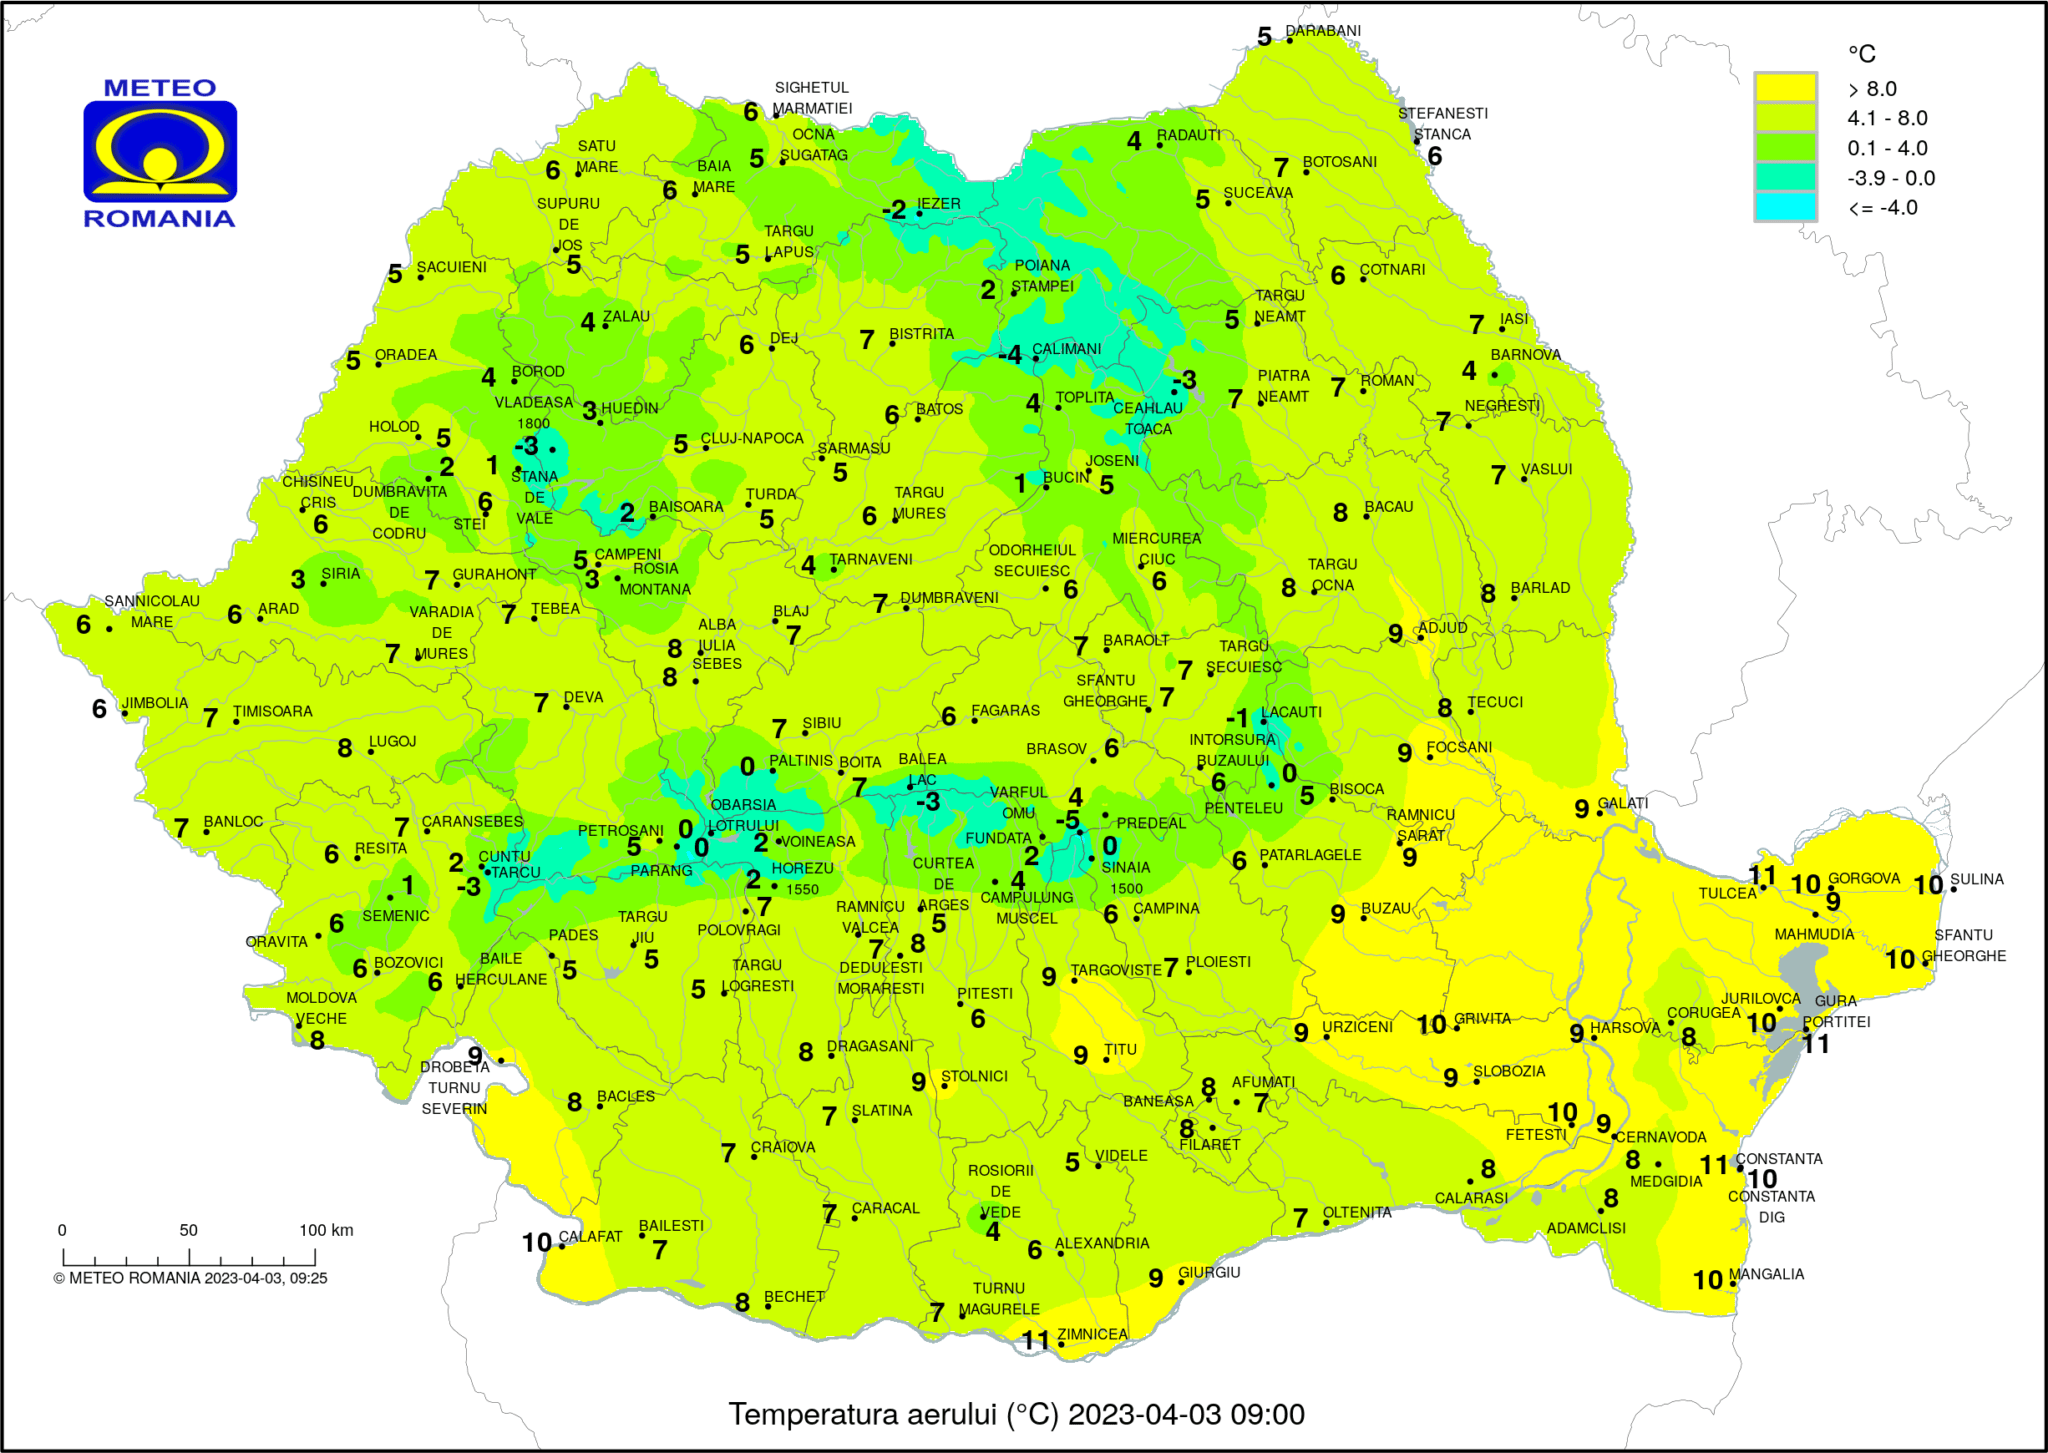 Temperaturile dimineții în România (ora 9) Temperaturi resimțite